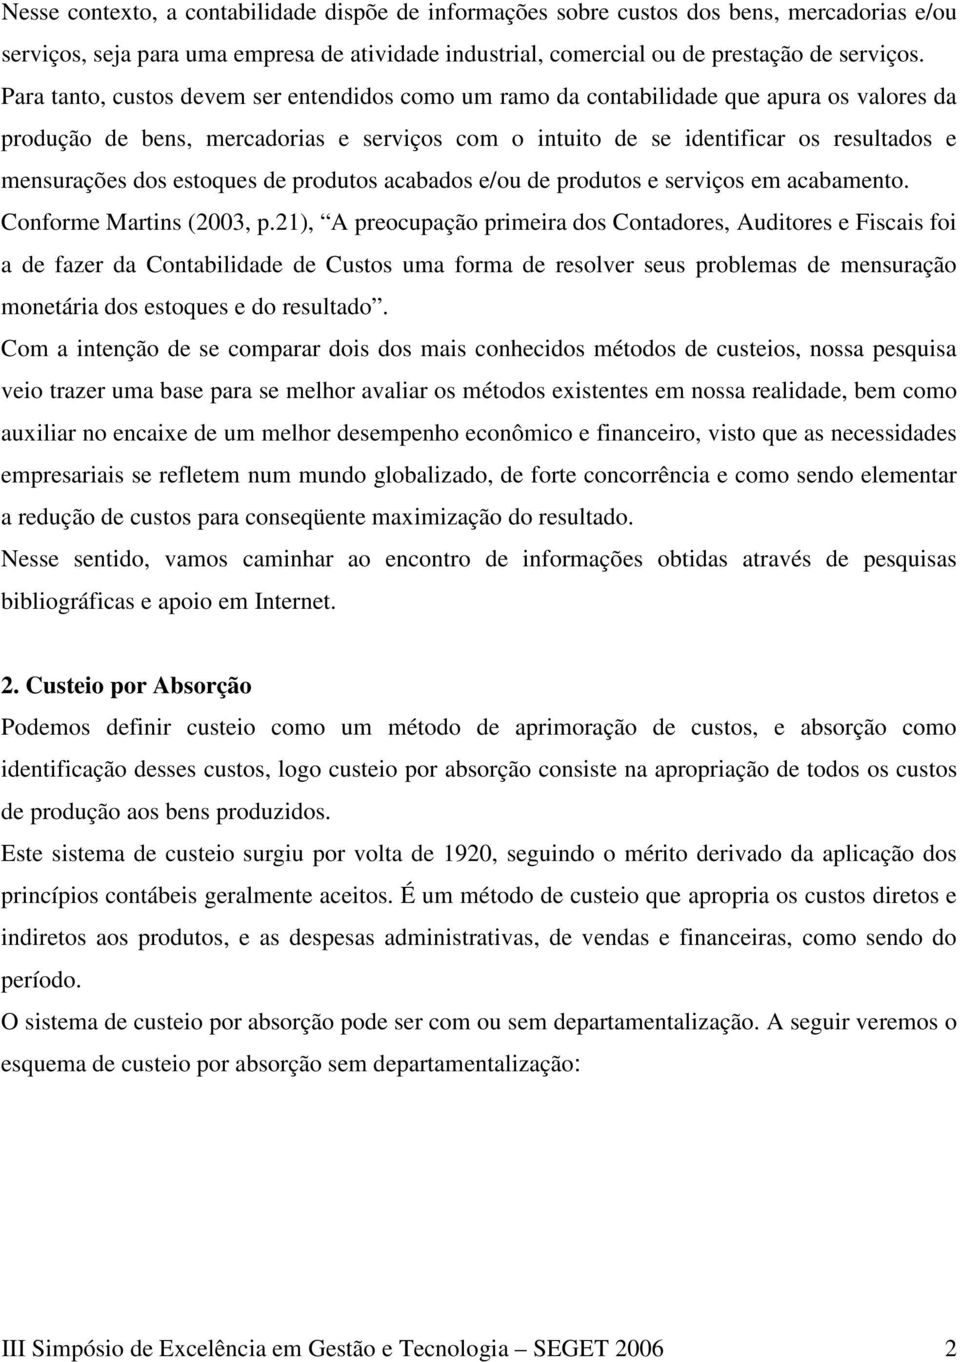 estoques de produtos acabados e/ou de produtos e serviços em acabamento. Conforme Martins (2003, p.